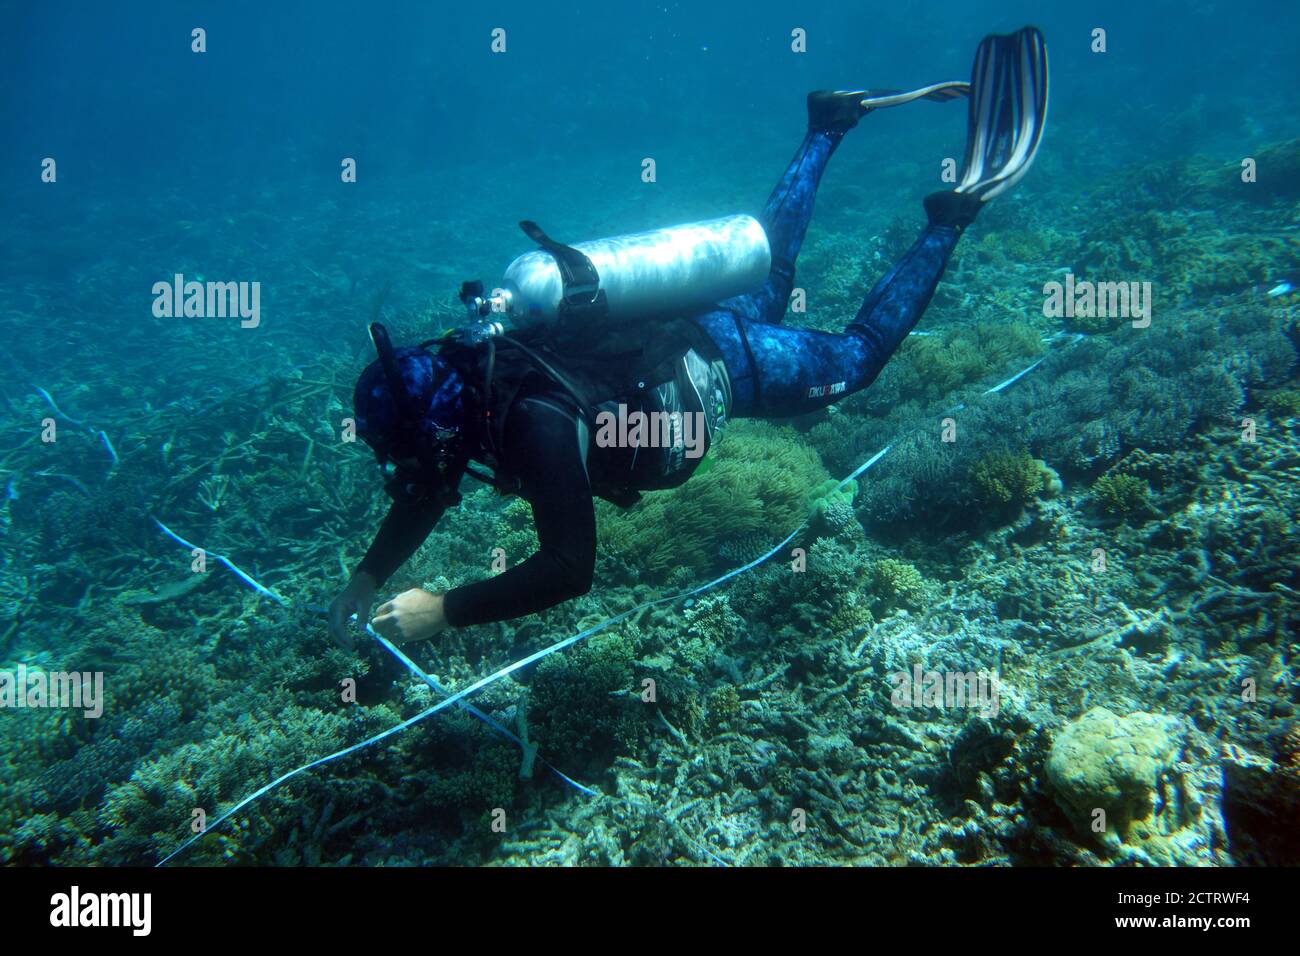 Plongeur scientifique collectant des données le long de la bande transect, Grande barrière de corail, Queensland, Australie. Pas de MR ou PR Banque D'Images